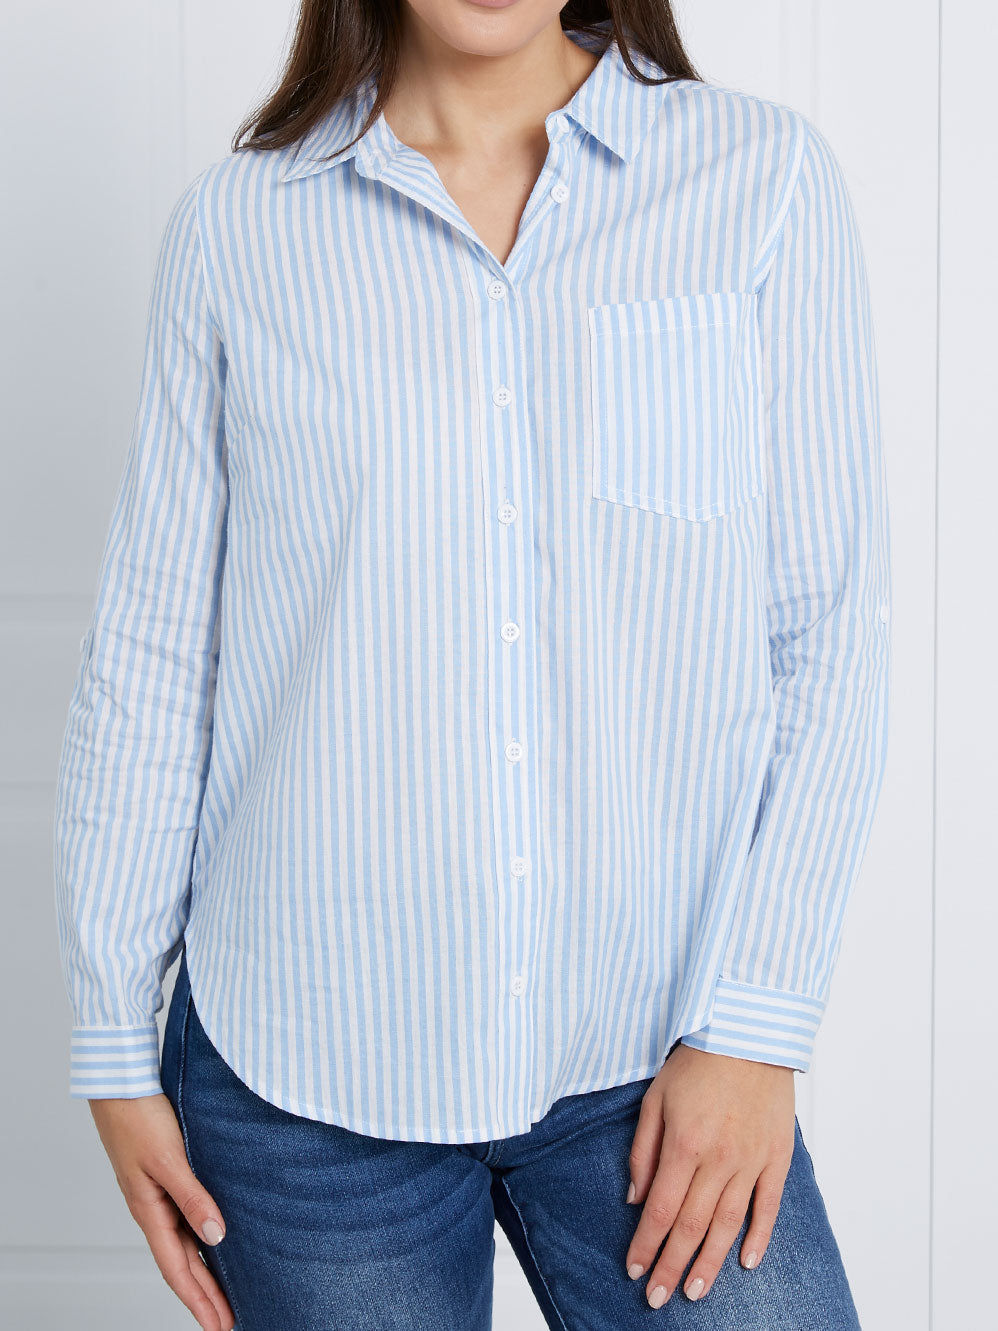 Stripe button blouse - Blue